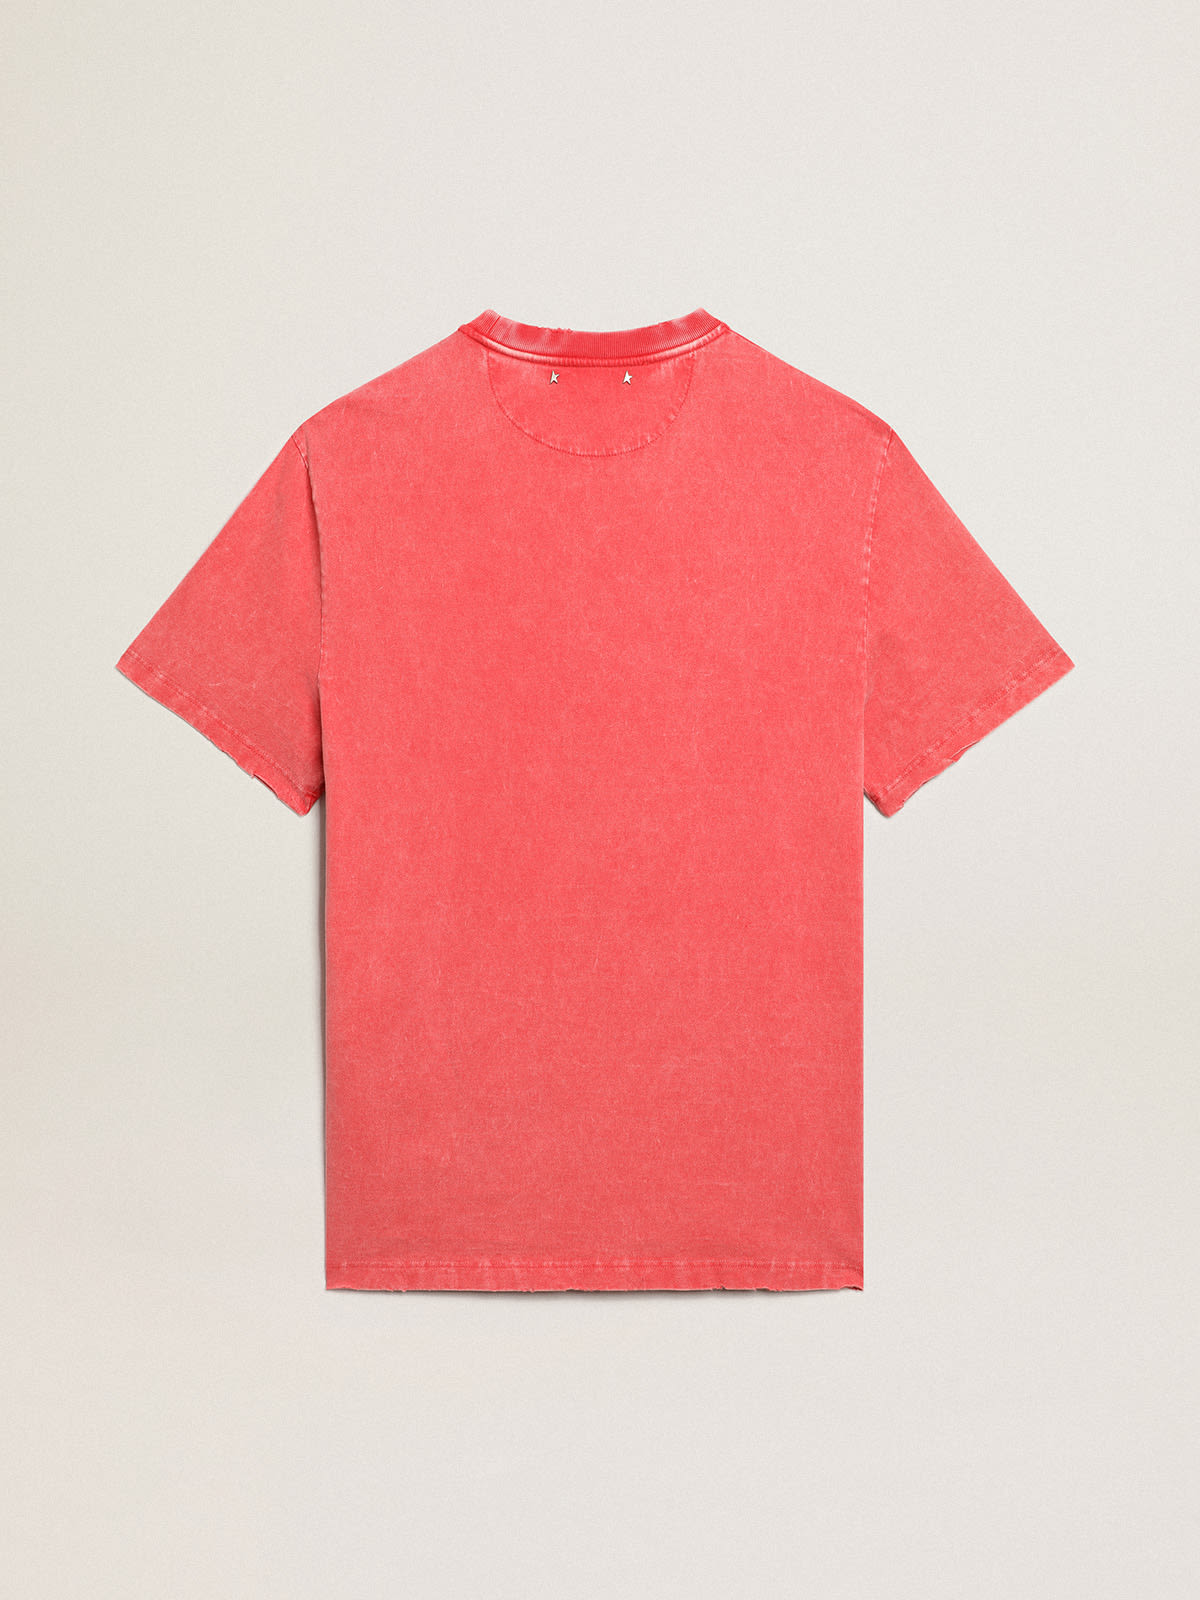 Golden Goose - Rotes T-Shirt mit ecrufarbenem aufgedrucktem Schriftzug in 